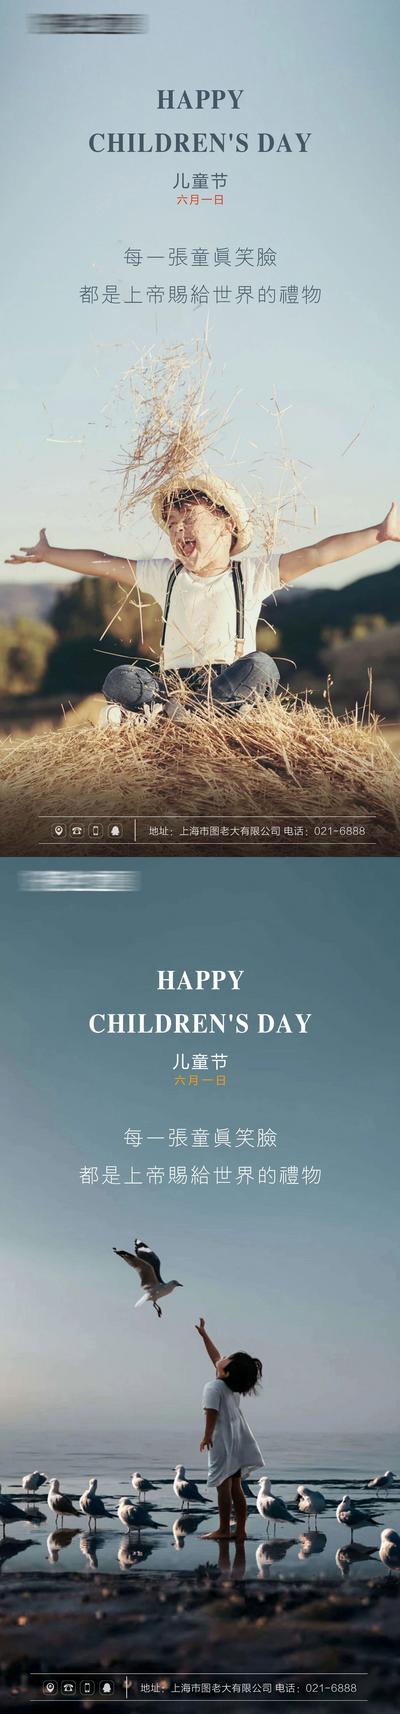 南门网 海报 公历节日 房地产 儿童节 61 笑容 童心 系列